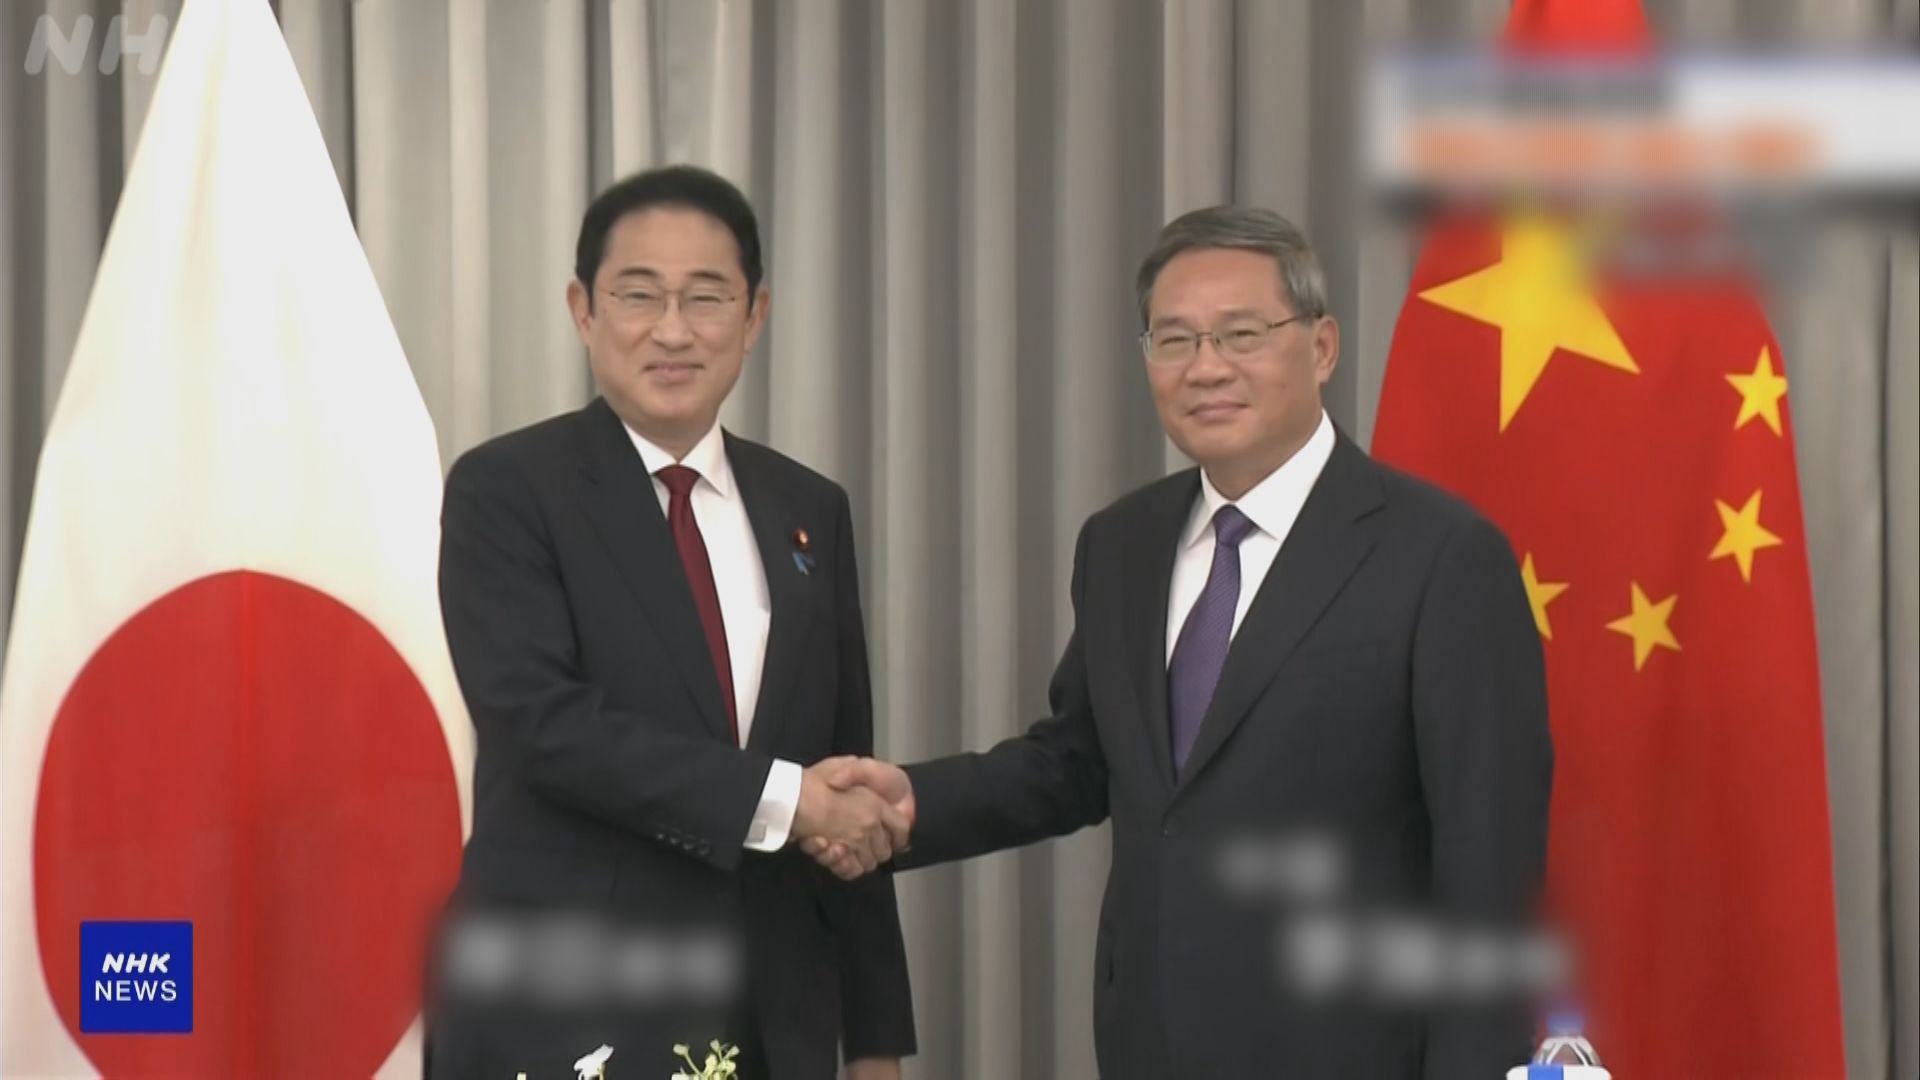 總理李強在首爾與日本首相岸田文雄會談